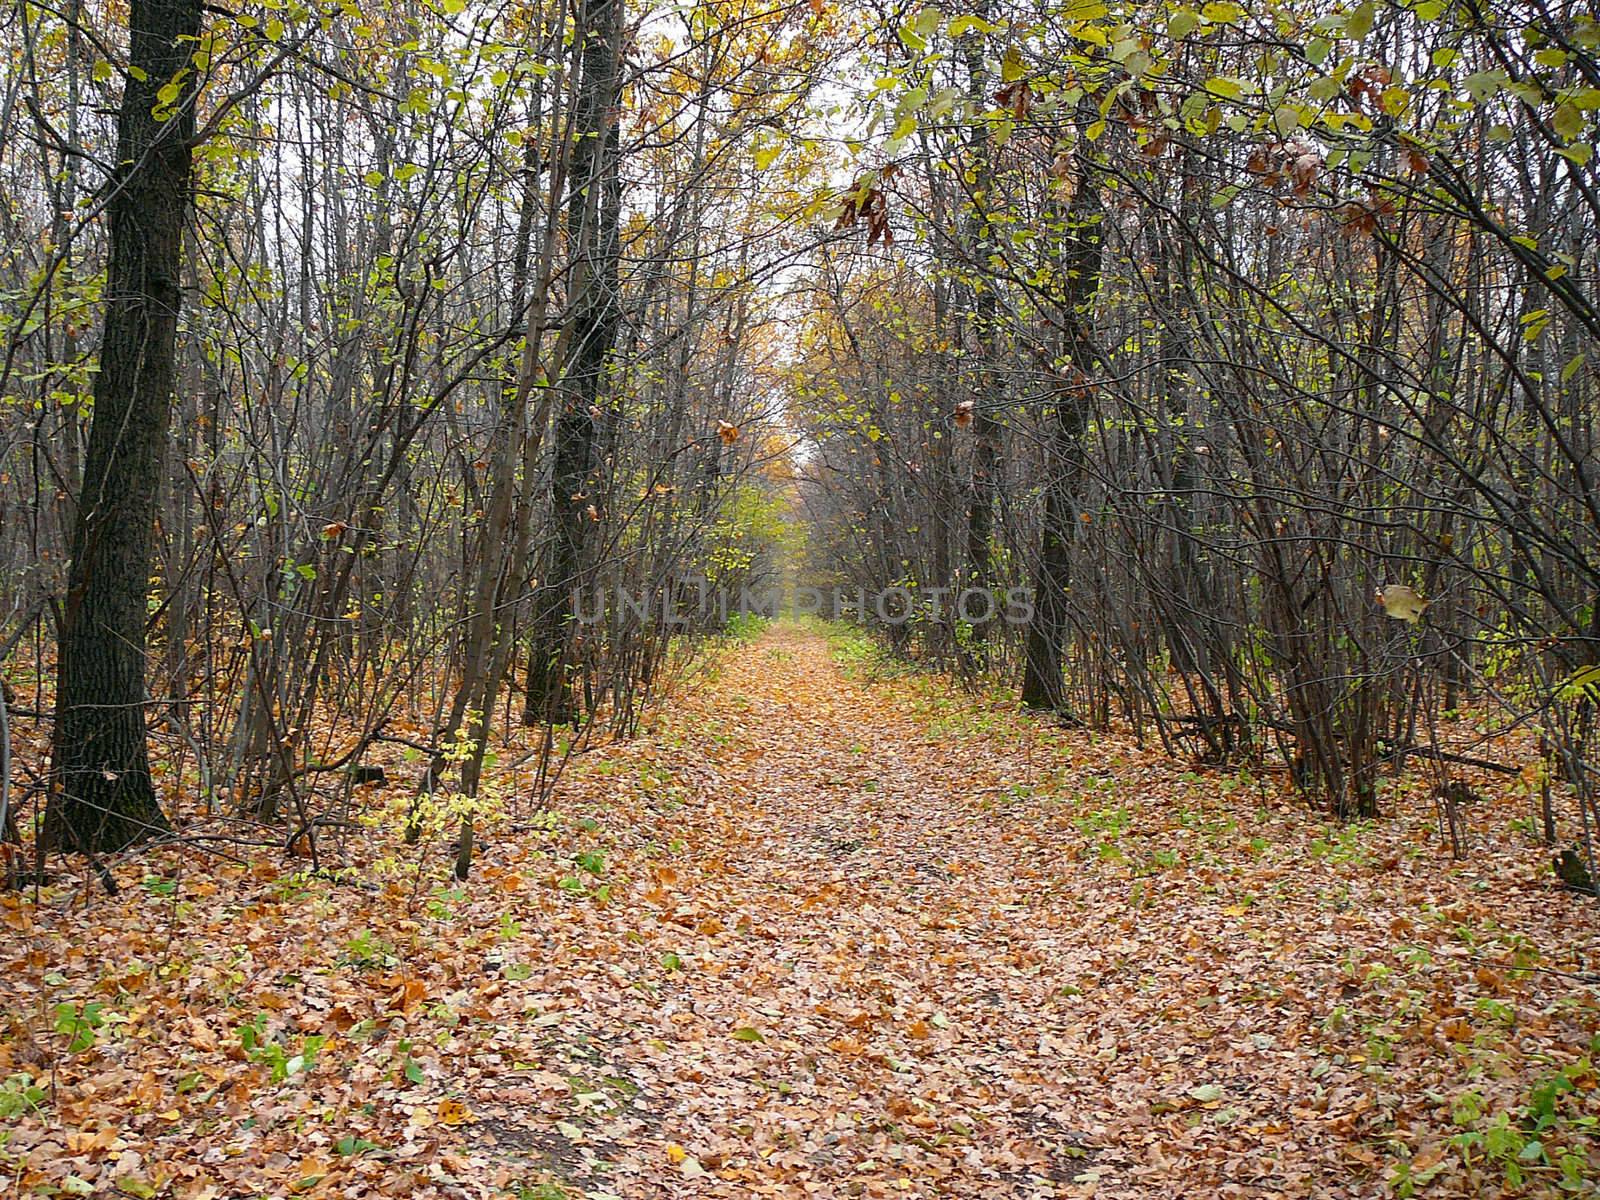 wilderness road in autumn forest by Mikko